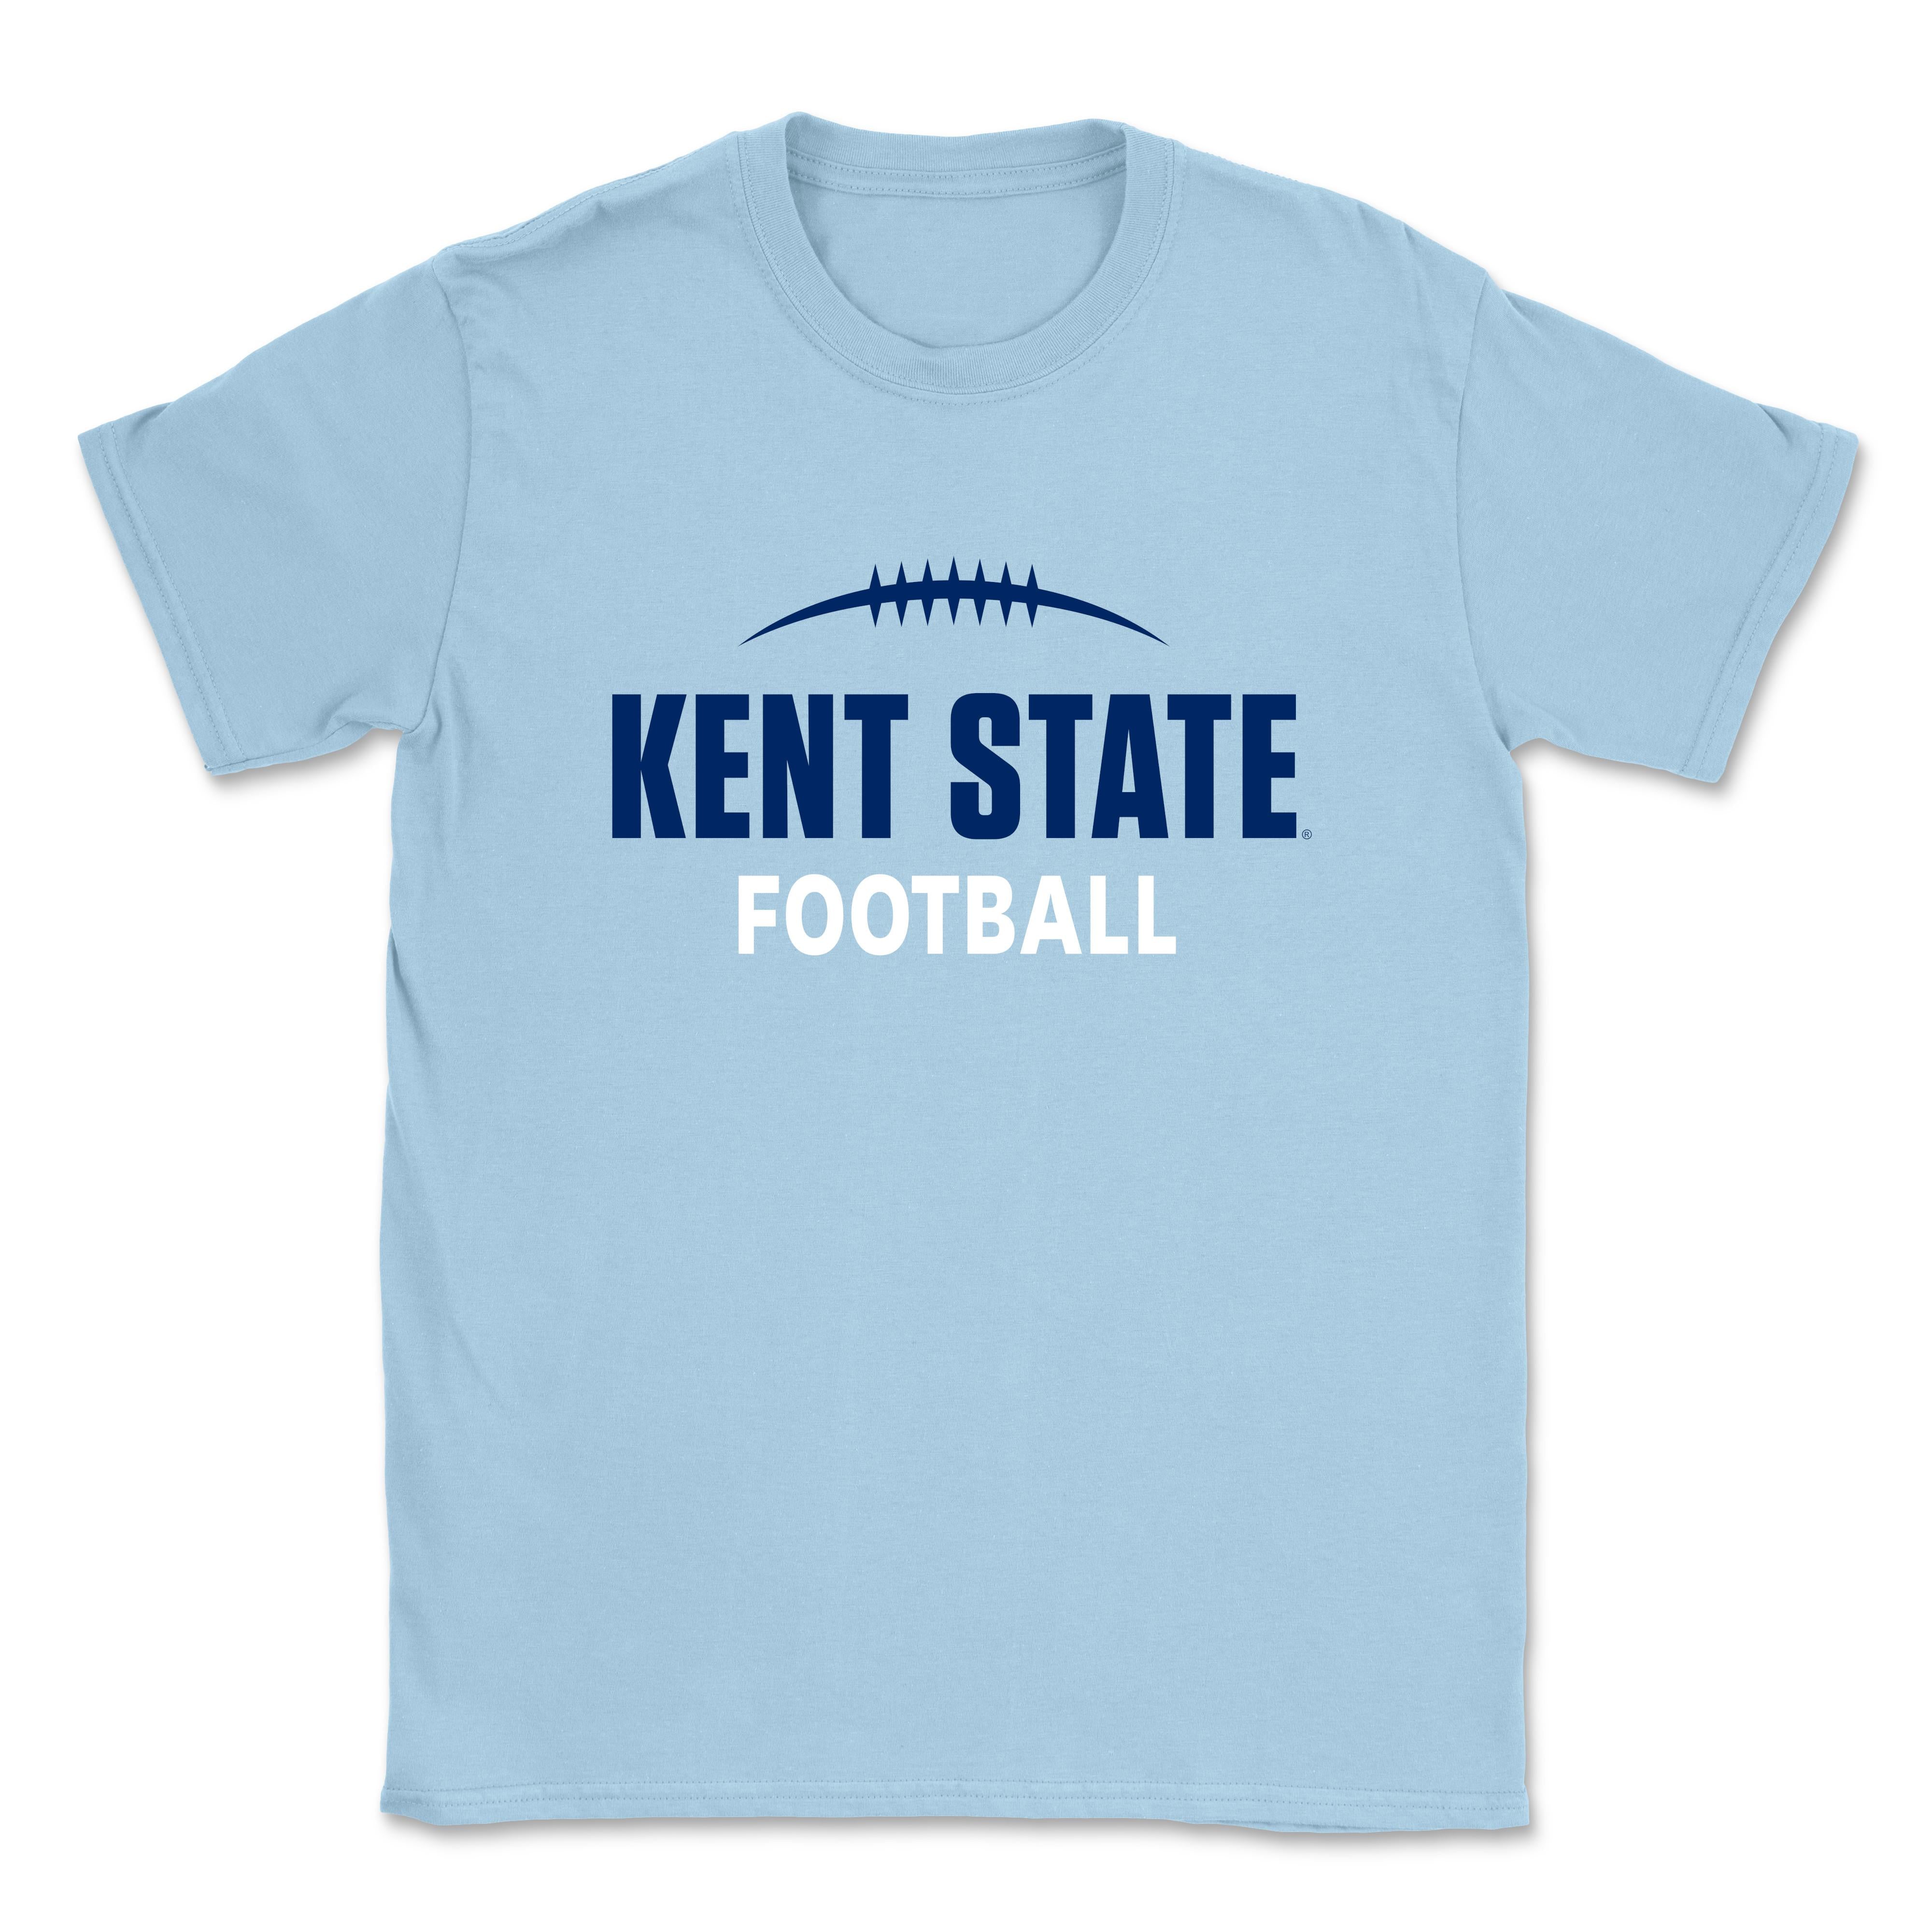 Kent State Light Blue Football T-Shirt